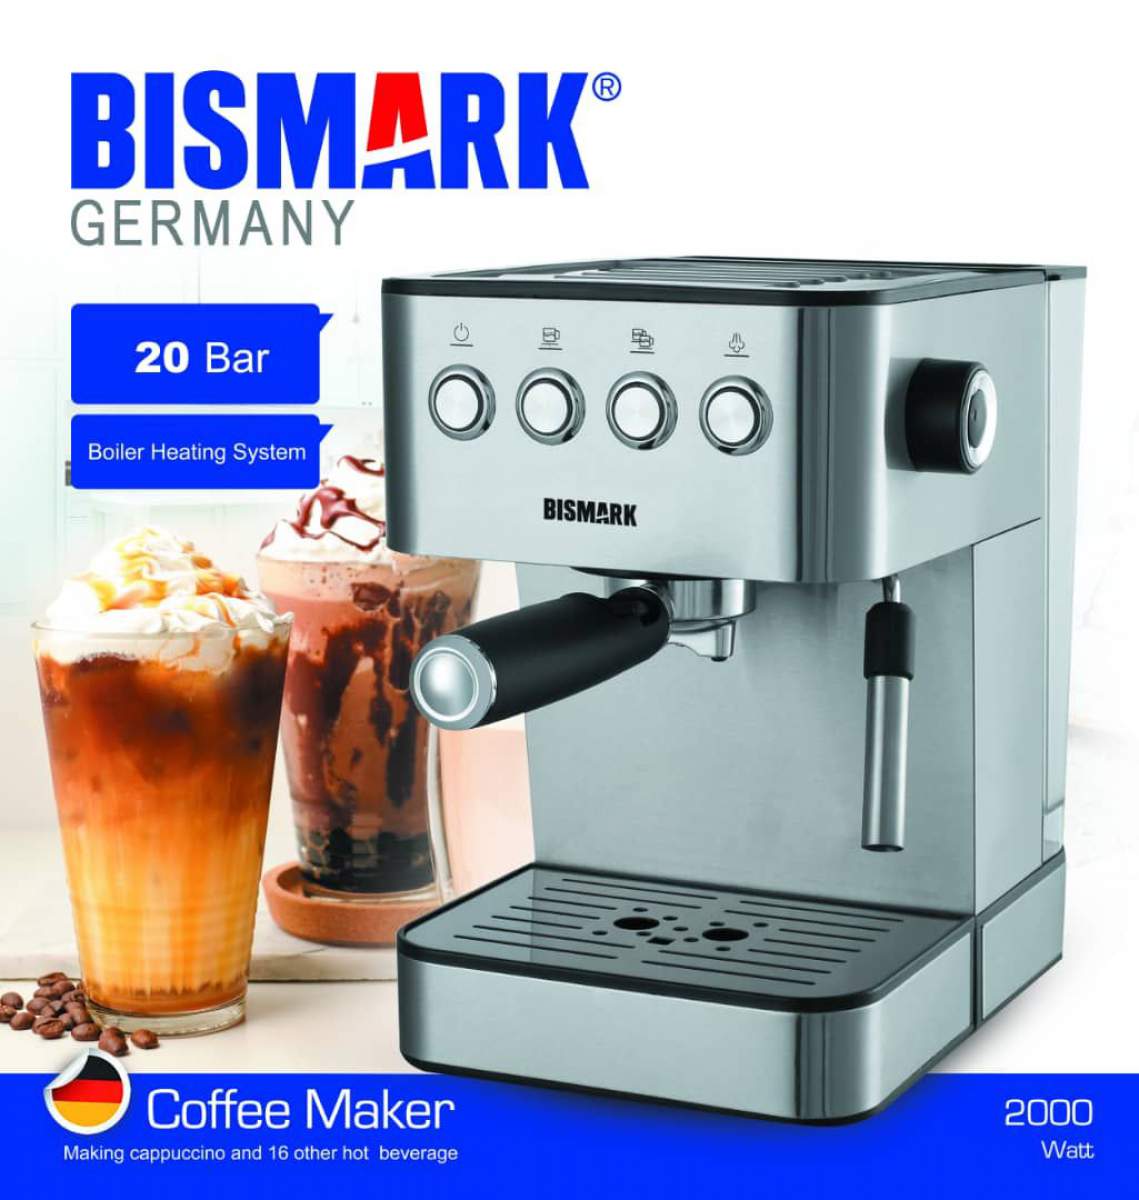 اسپرسوساز بیسمارک تحت لیسانس آلمان مدل BM2250 ا Bismark BM2250 Espresso Machine